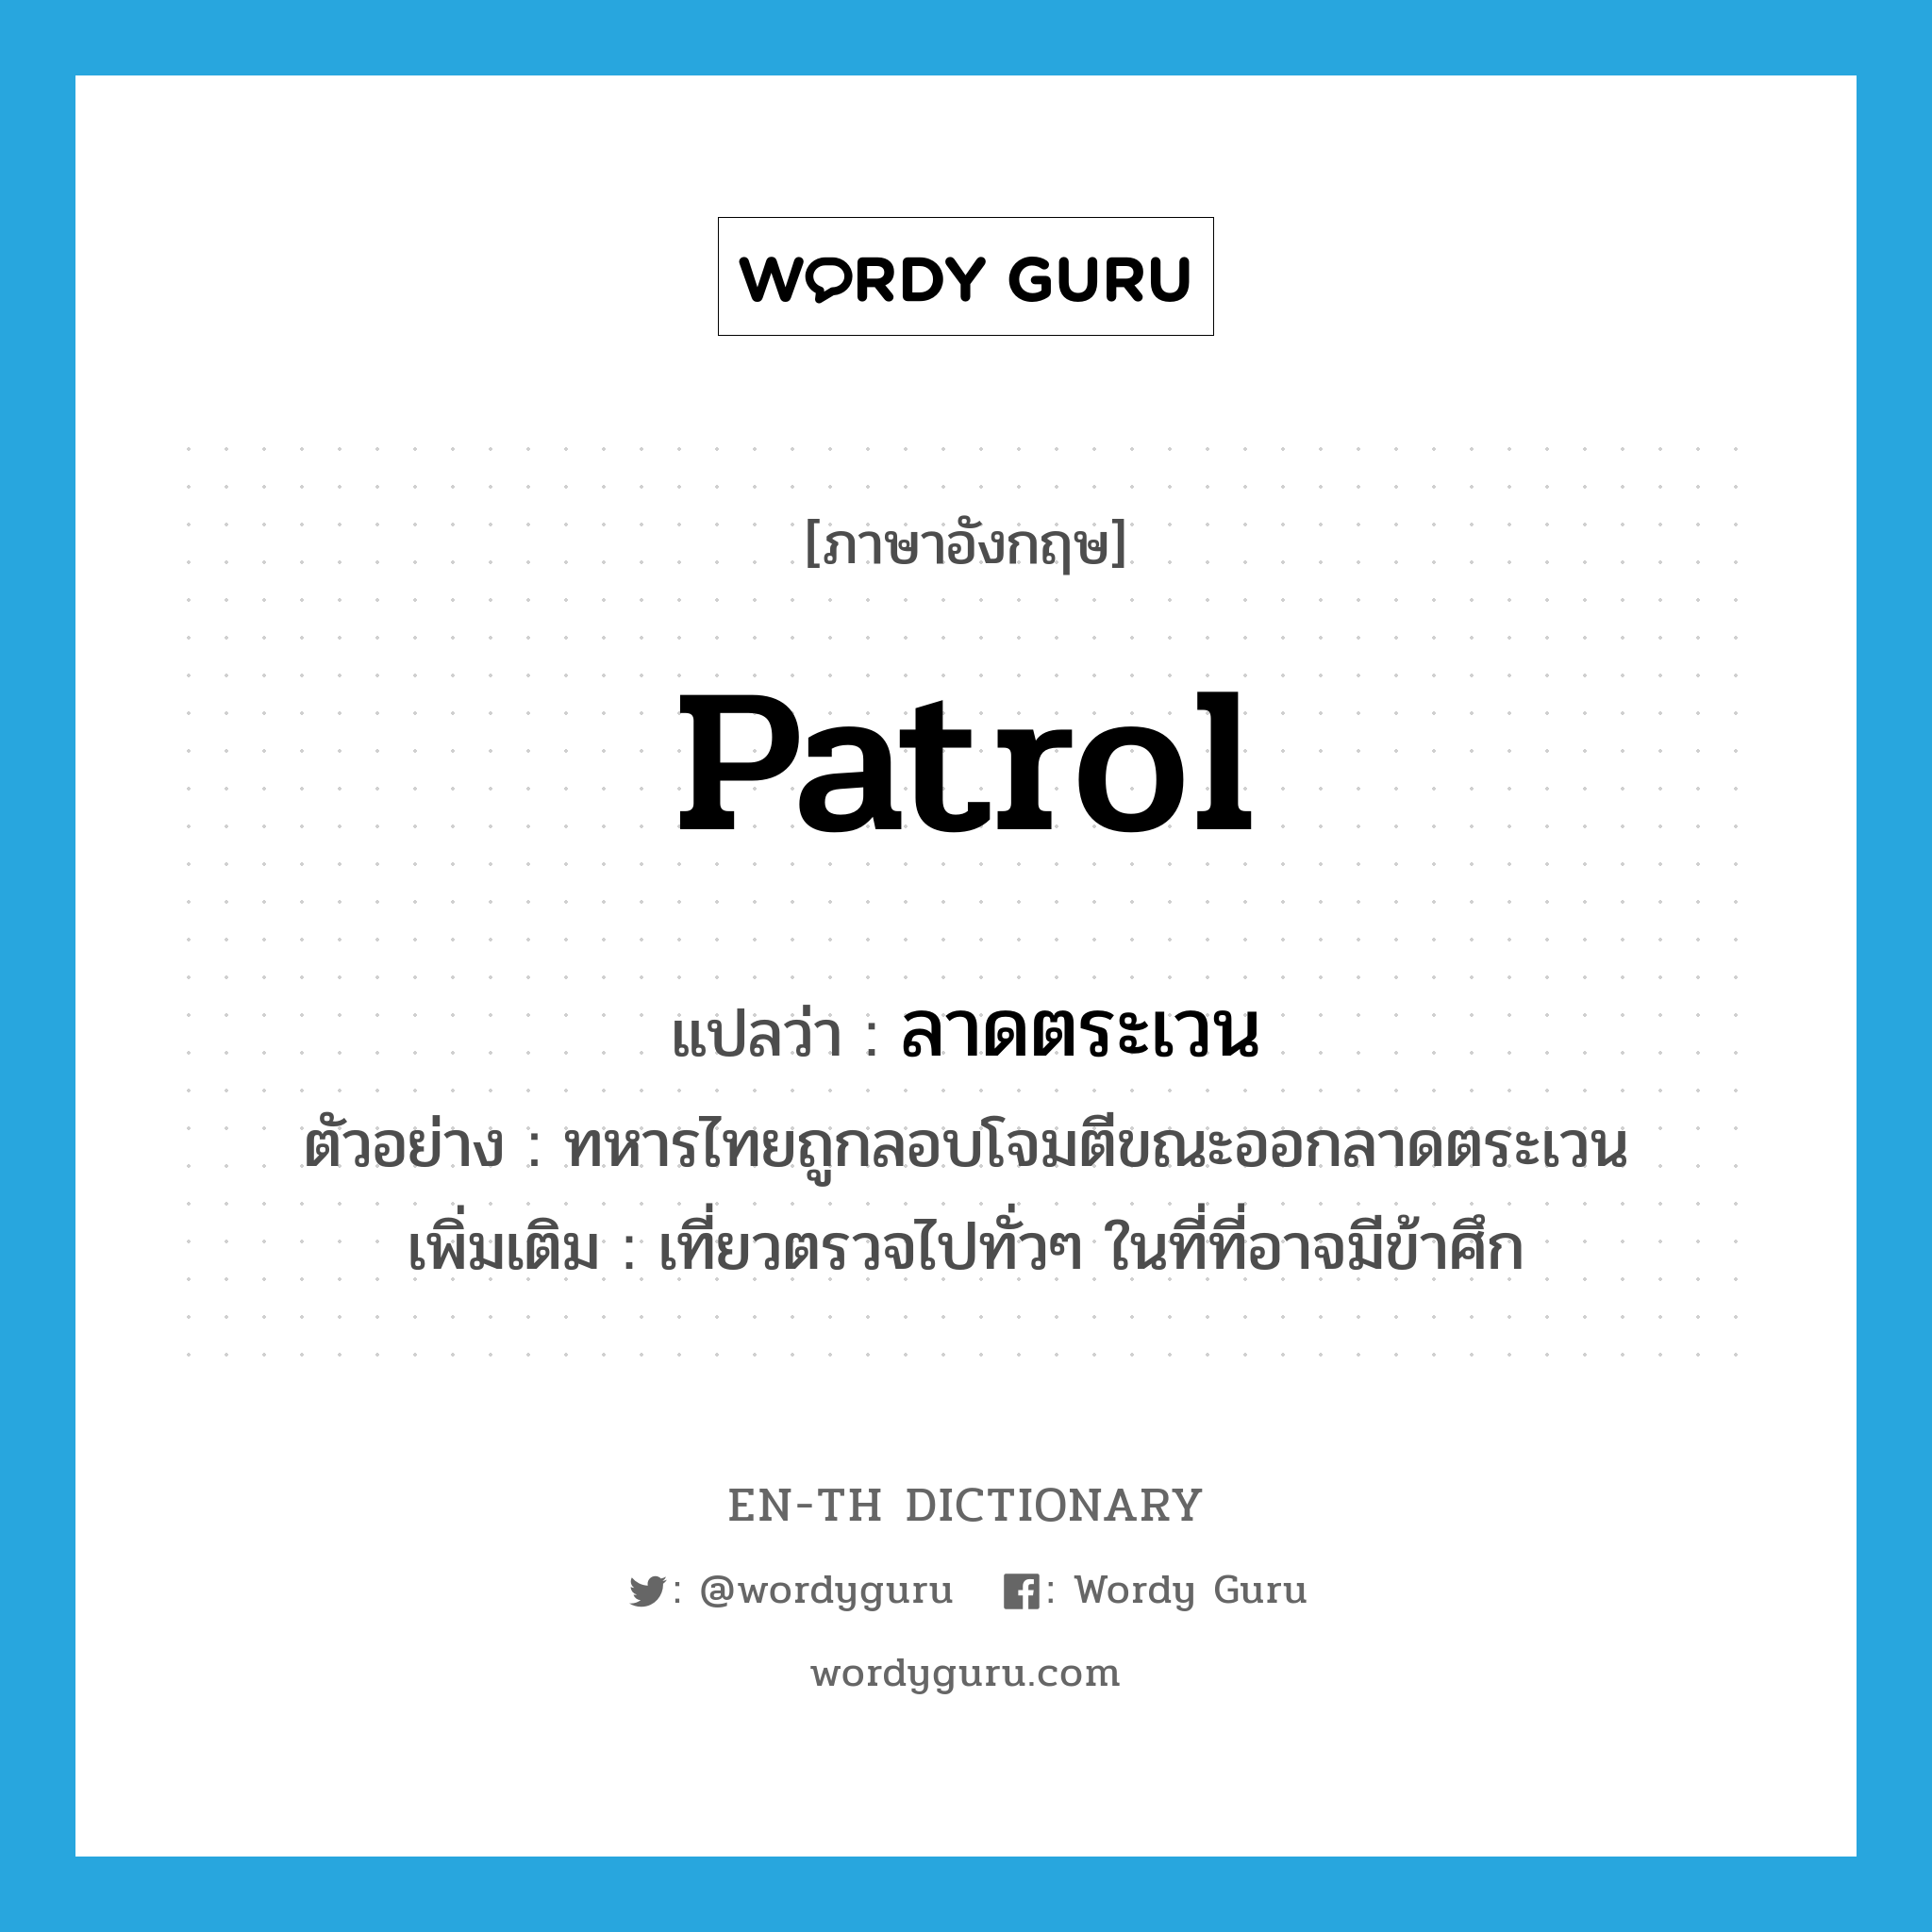 patrol แปลว่า?, คำศัพท์ภาษาอังกฤษ patrol แปลว่า ลาดตระเวน ประเภท V ตัวอย่าง ทหารไทยถูกลอบโจมตีขณะออกลาดตระเวน เพิ่มเติม เที่ยวตรวจไปทั่วๆ ในที่ที่อาจมีข้าศึก หมวด V